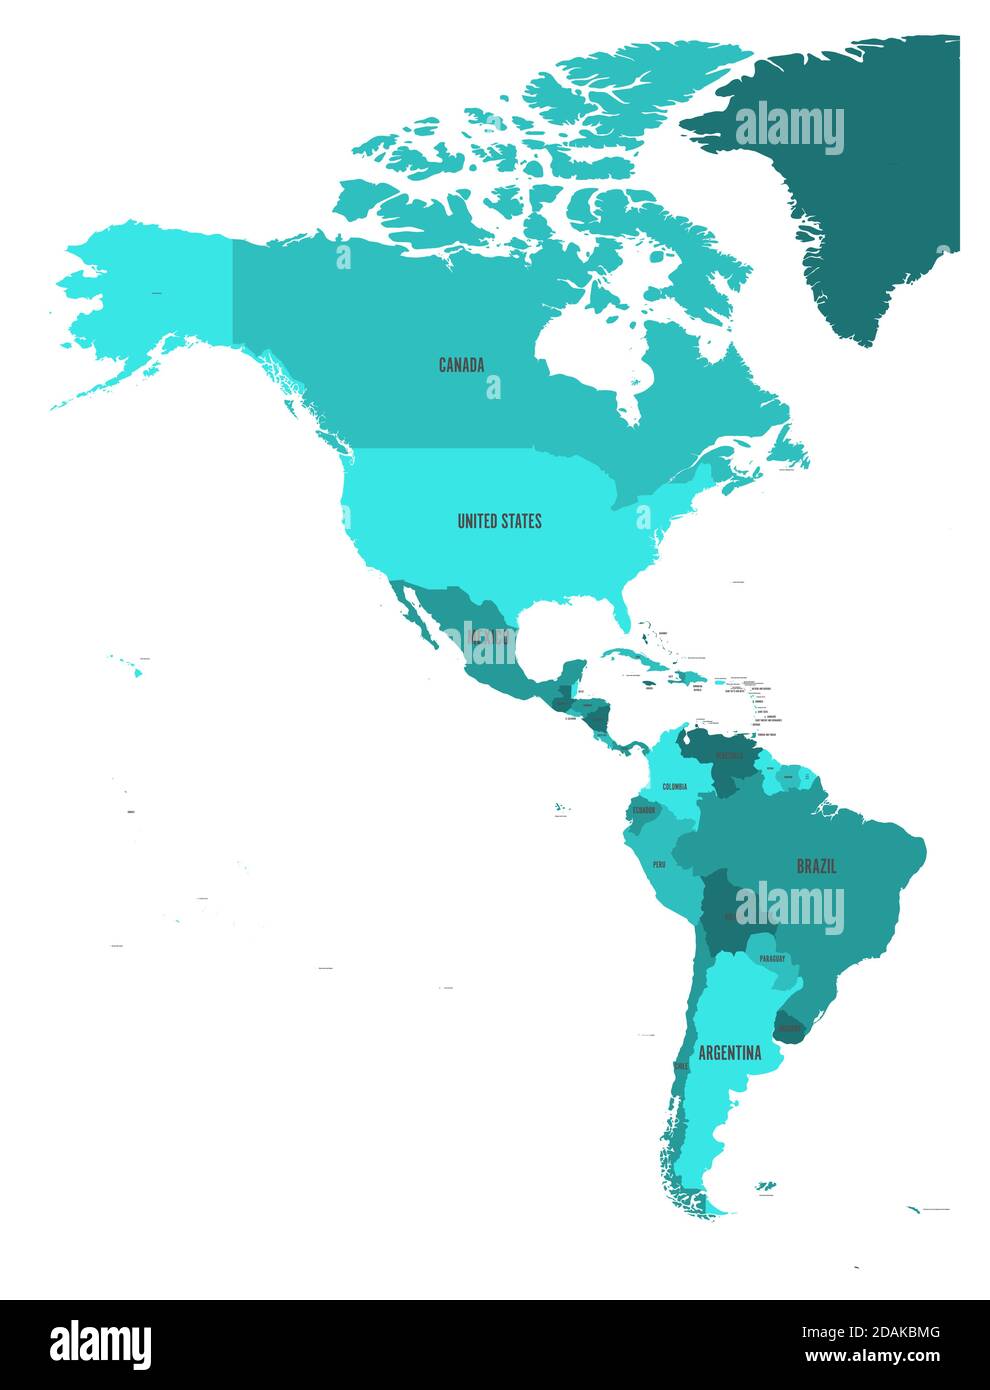 Politische Landkarte von Amerika in vier Schattierungen von türkisblauem auf weißem Hintergrund. Nord- und Südamerika mit Länderkennzeichen. Einfache flache Vektordarstellung. Stock Vektor